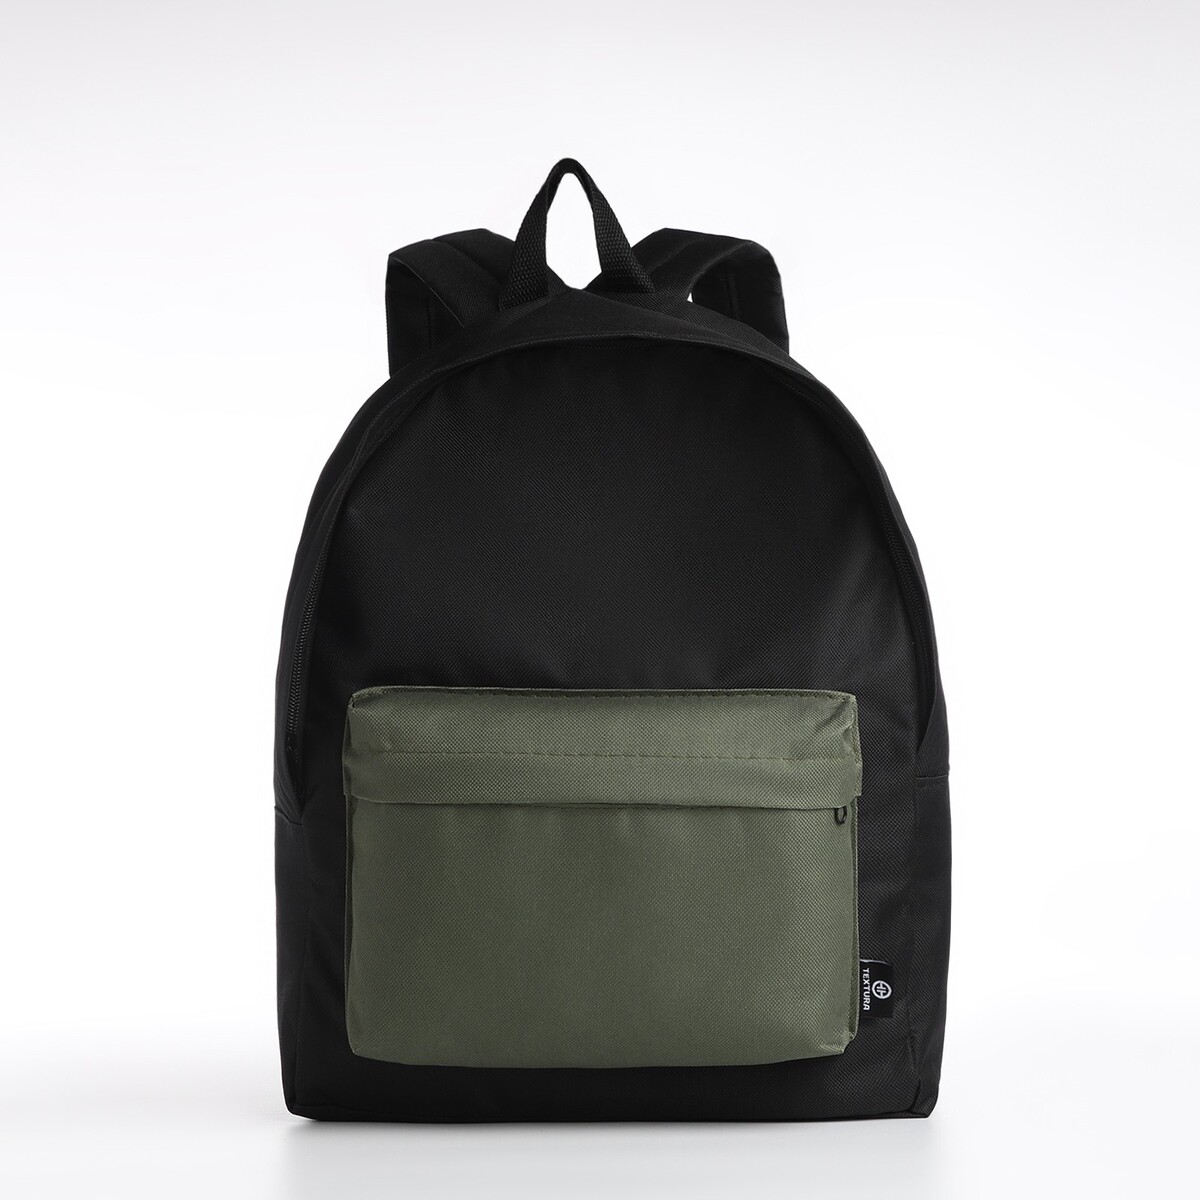 Спортивный рюкзак textura, 20 литров, цвет черный/хаки TEXTURA